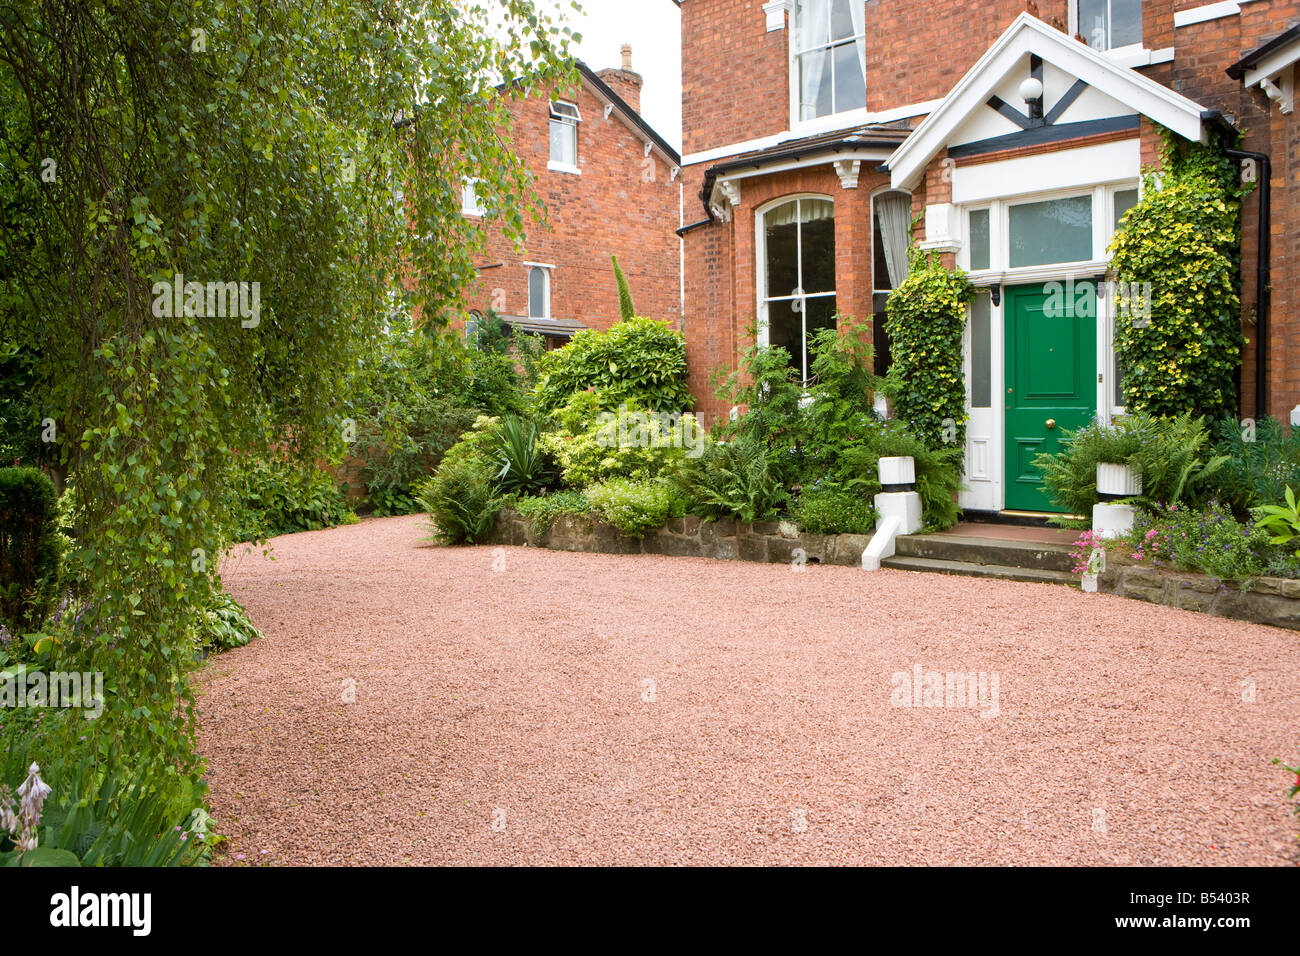 Vorgarten eines großen Einfamilienhauses mit roten Kies Einfahrt und Holly Büsche Stockfoto